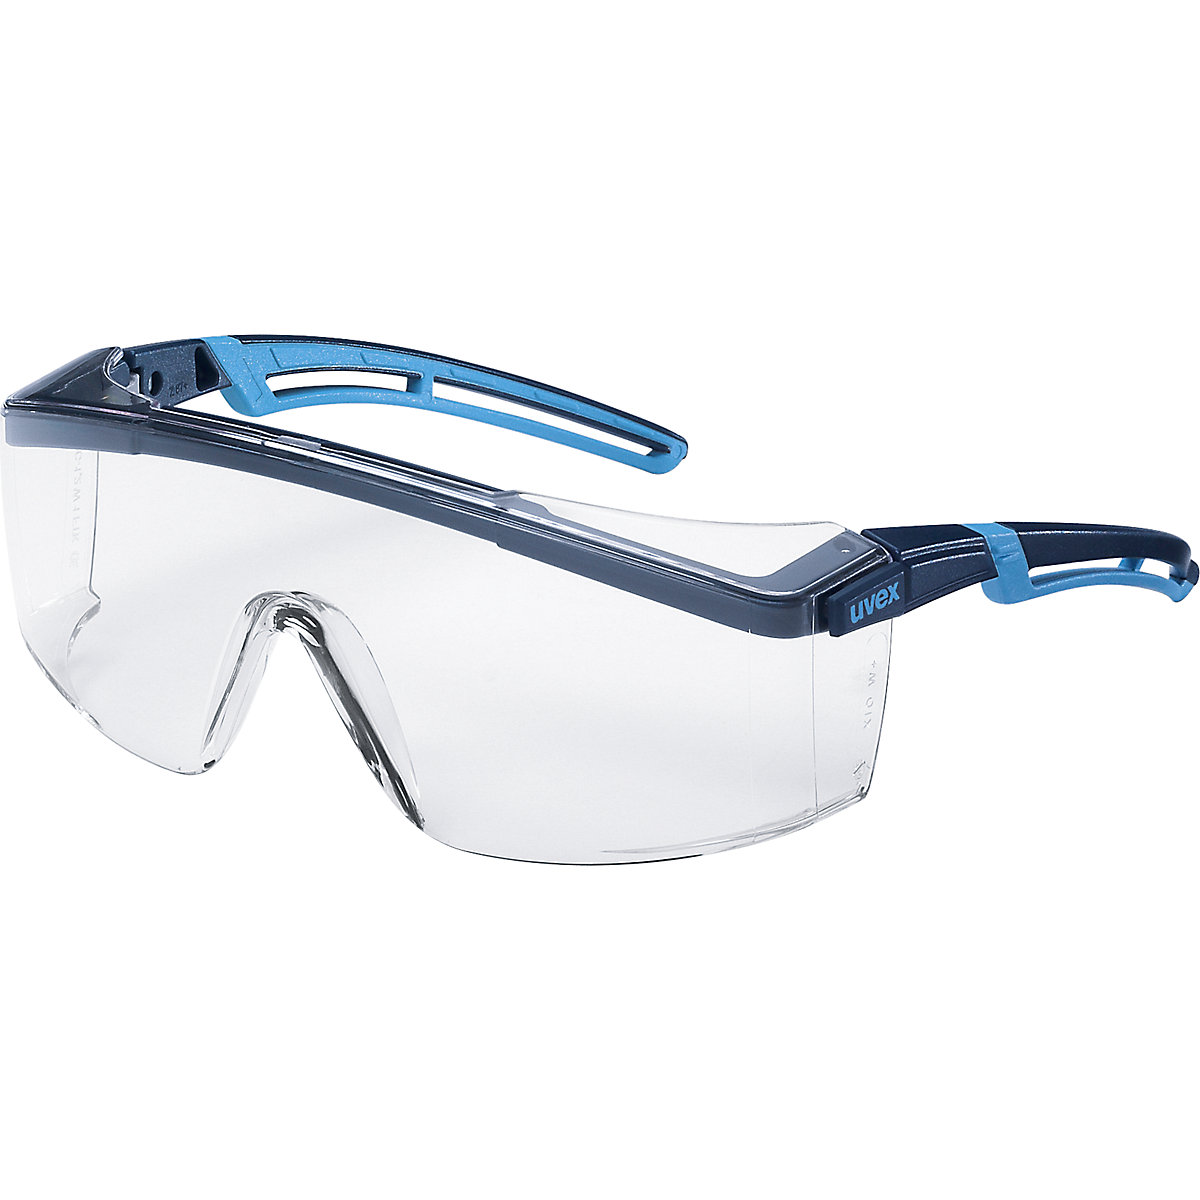 Zaštitne naočale s ručkama atrospec 2.0 - Uvex